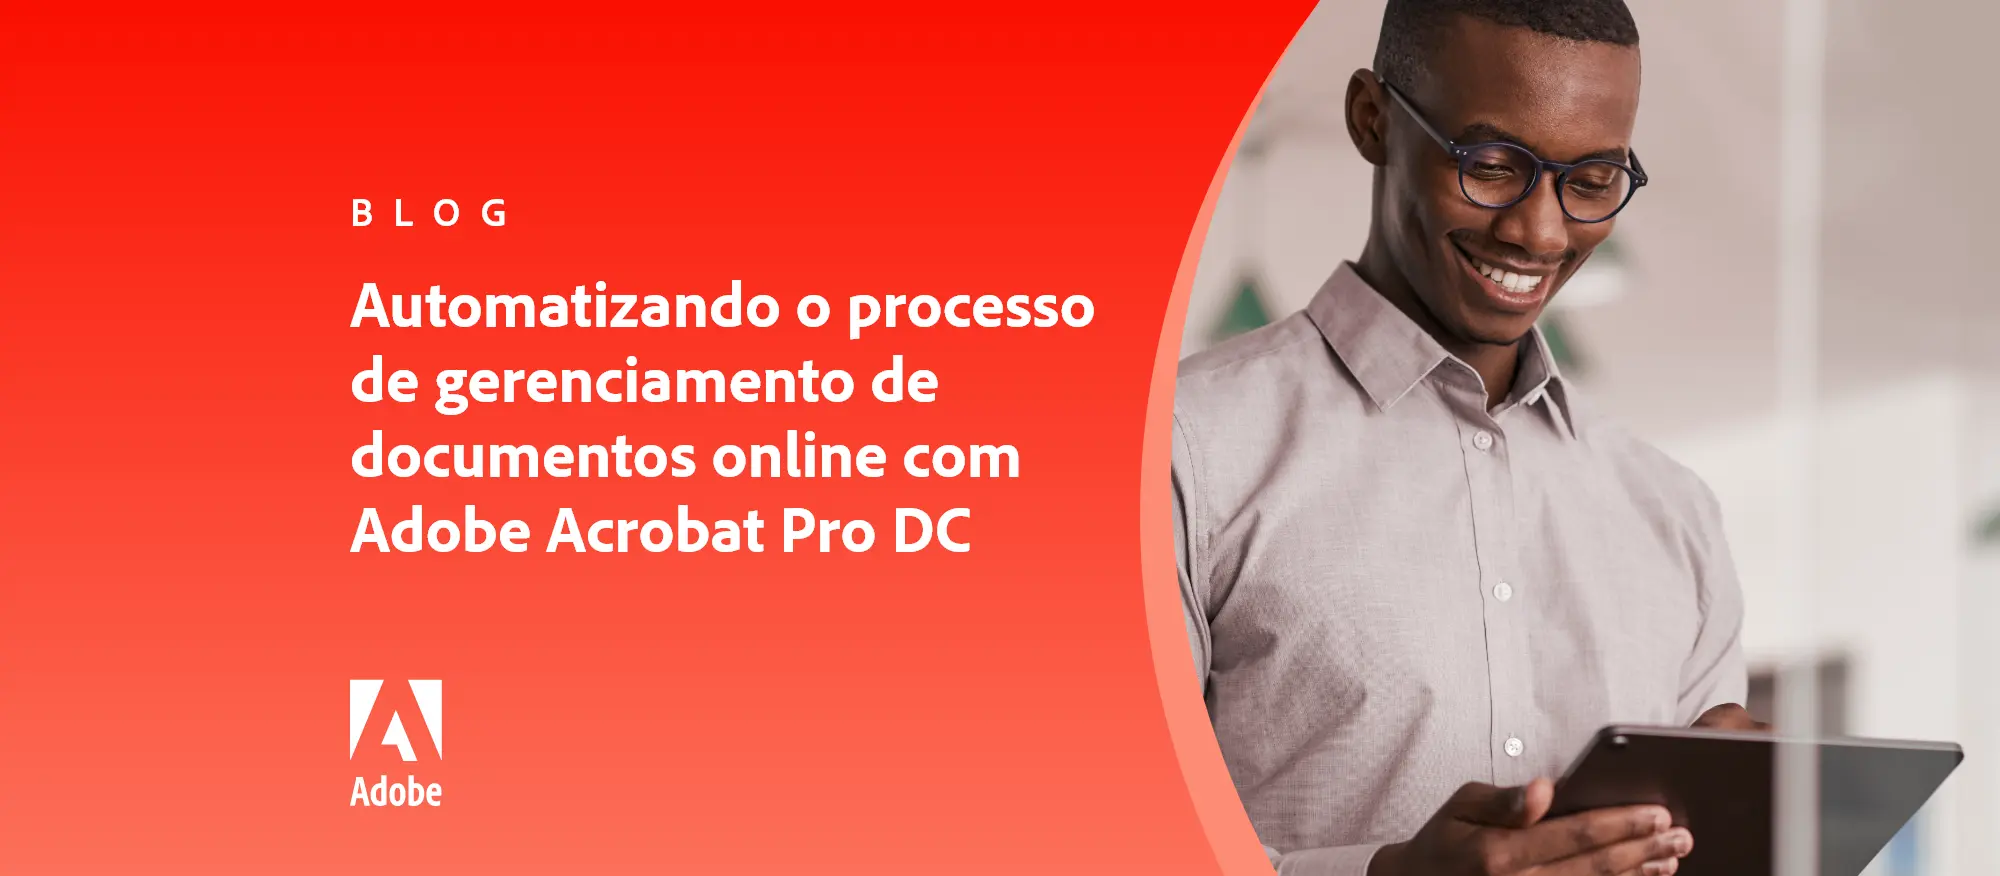 Automatizando o processo de gerenciamento de documentos online com Adobe Acrobat Pro DC